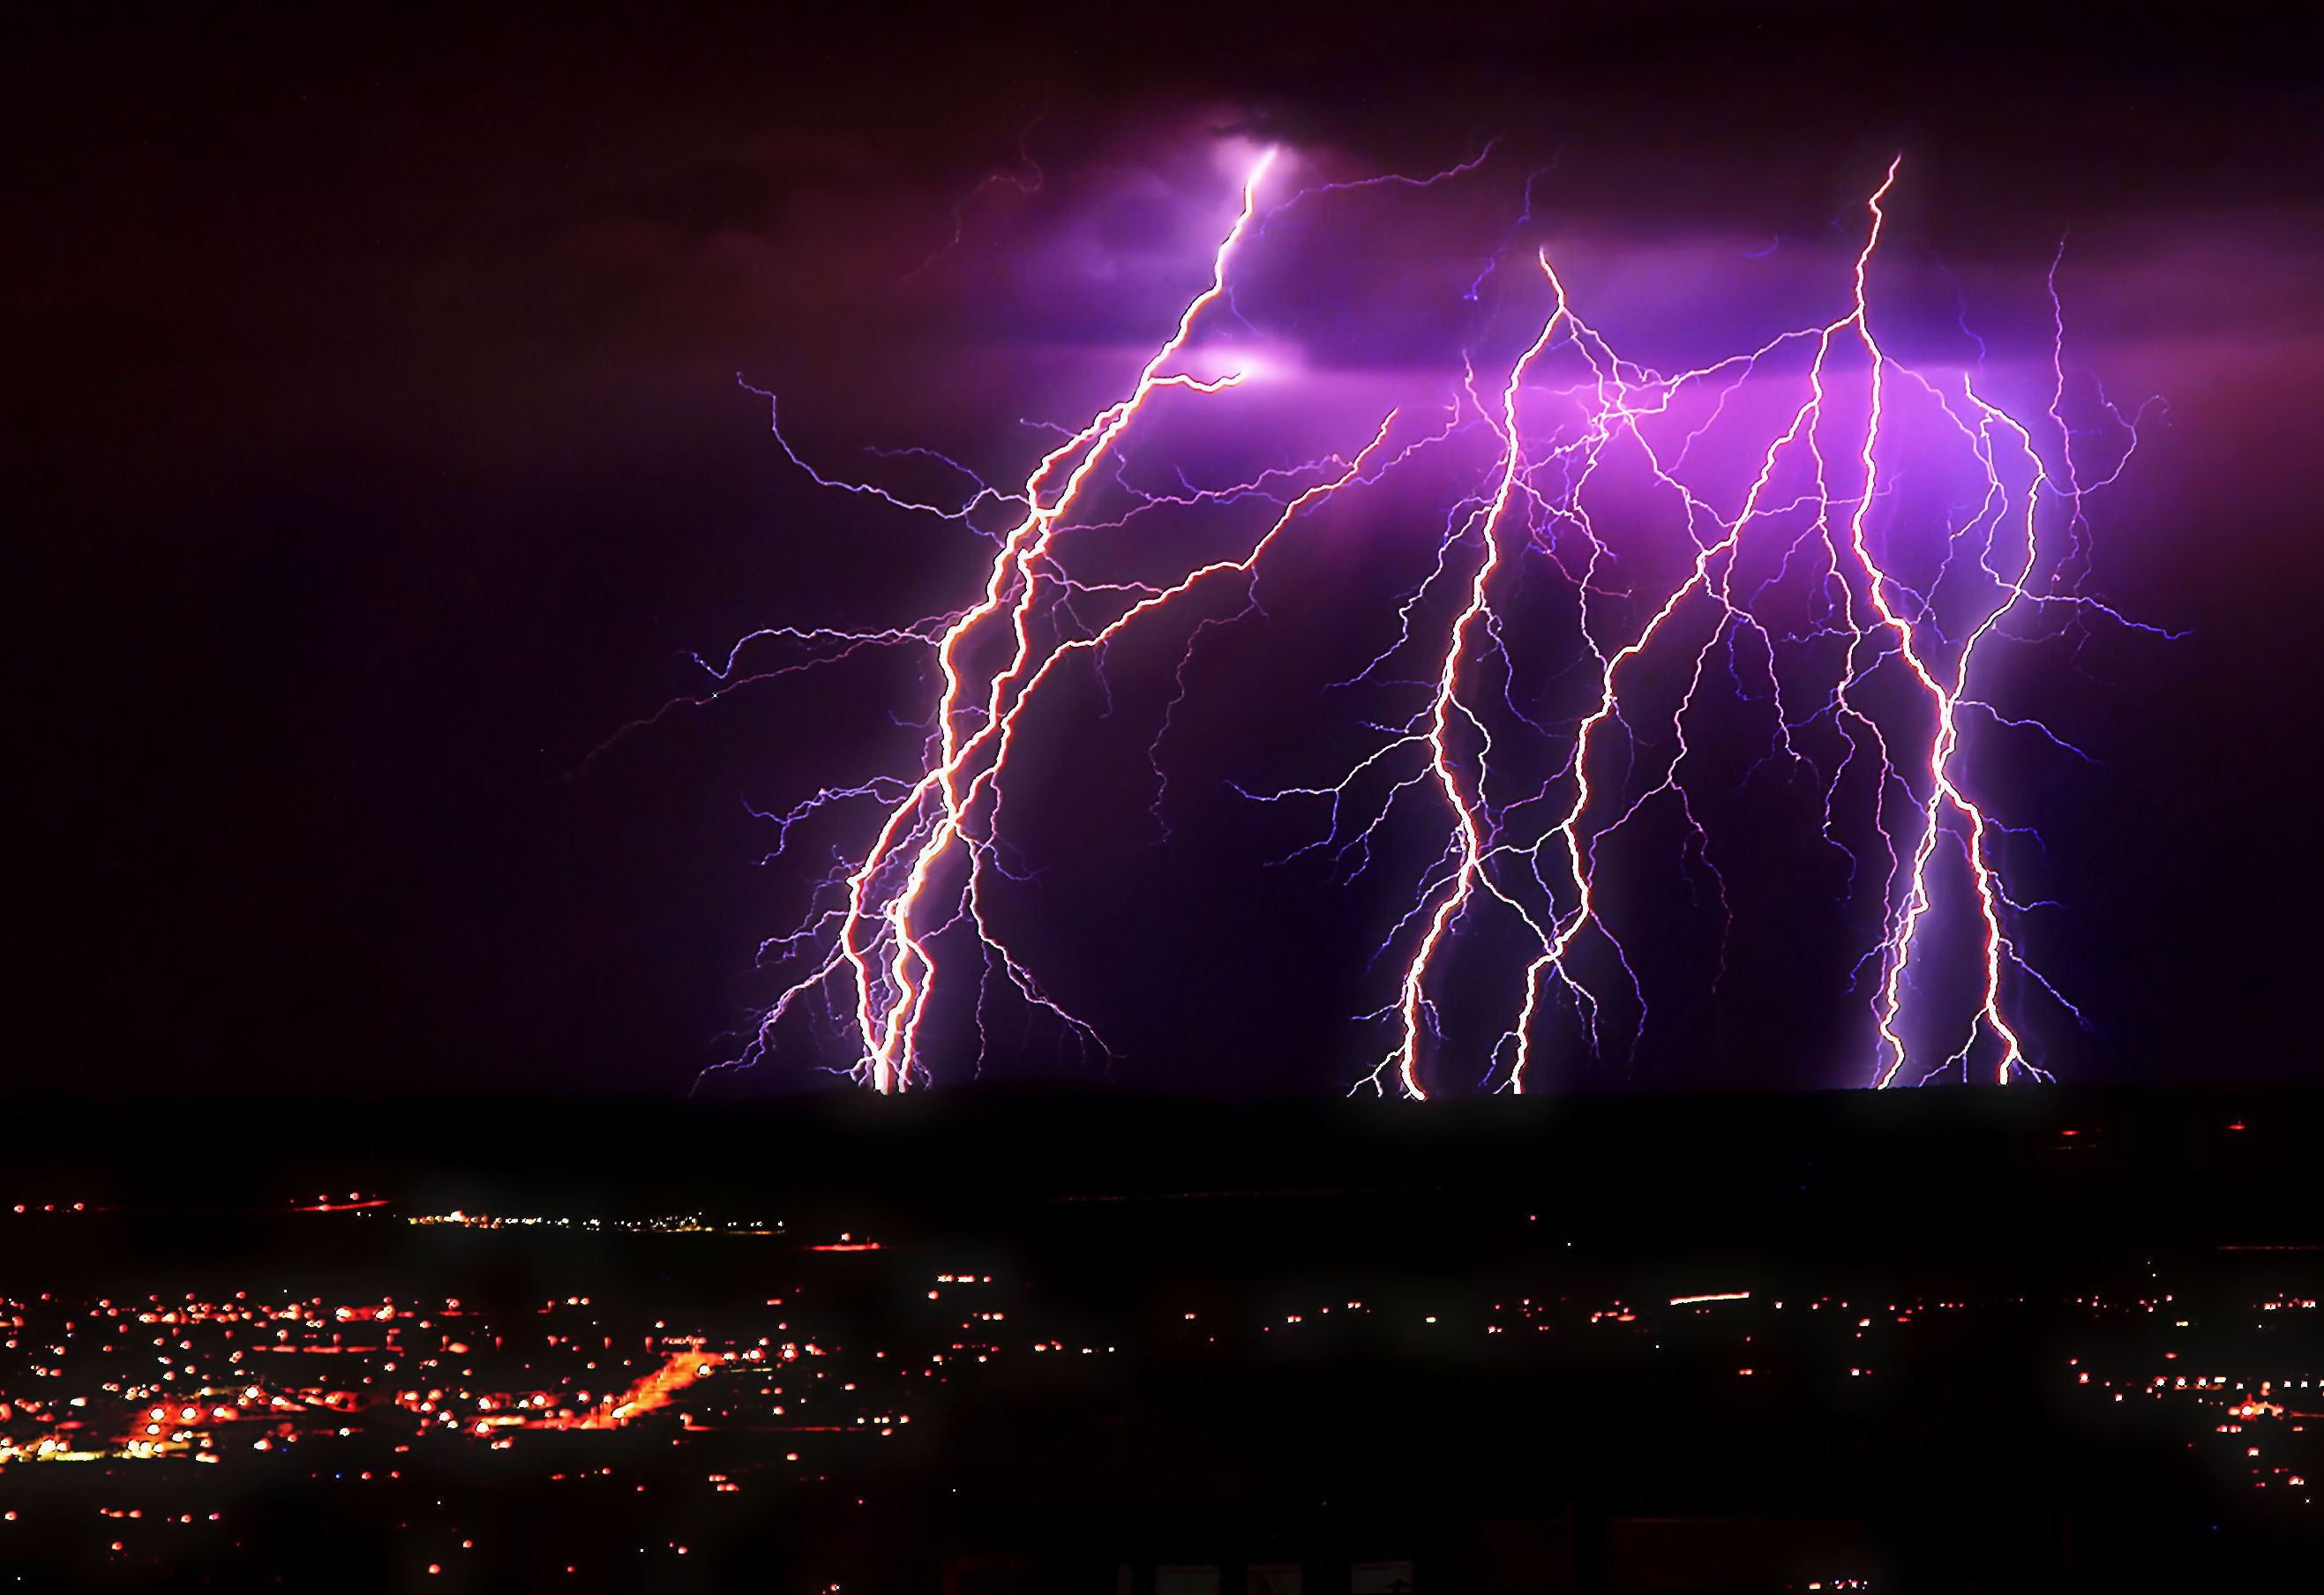 2634x1808 Nothing found for Impressive-lightning-storms-for-your-desktop-wallpaper | Hintergrundbilder, Blitzeinschlag, Hintergrund